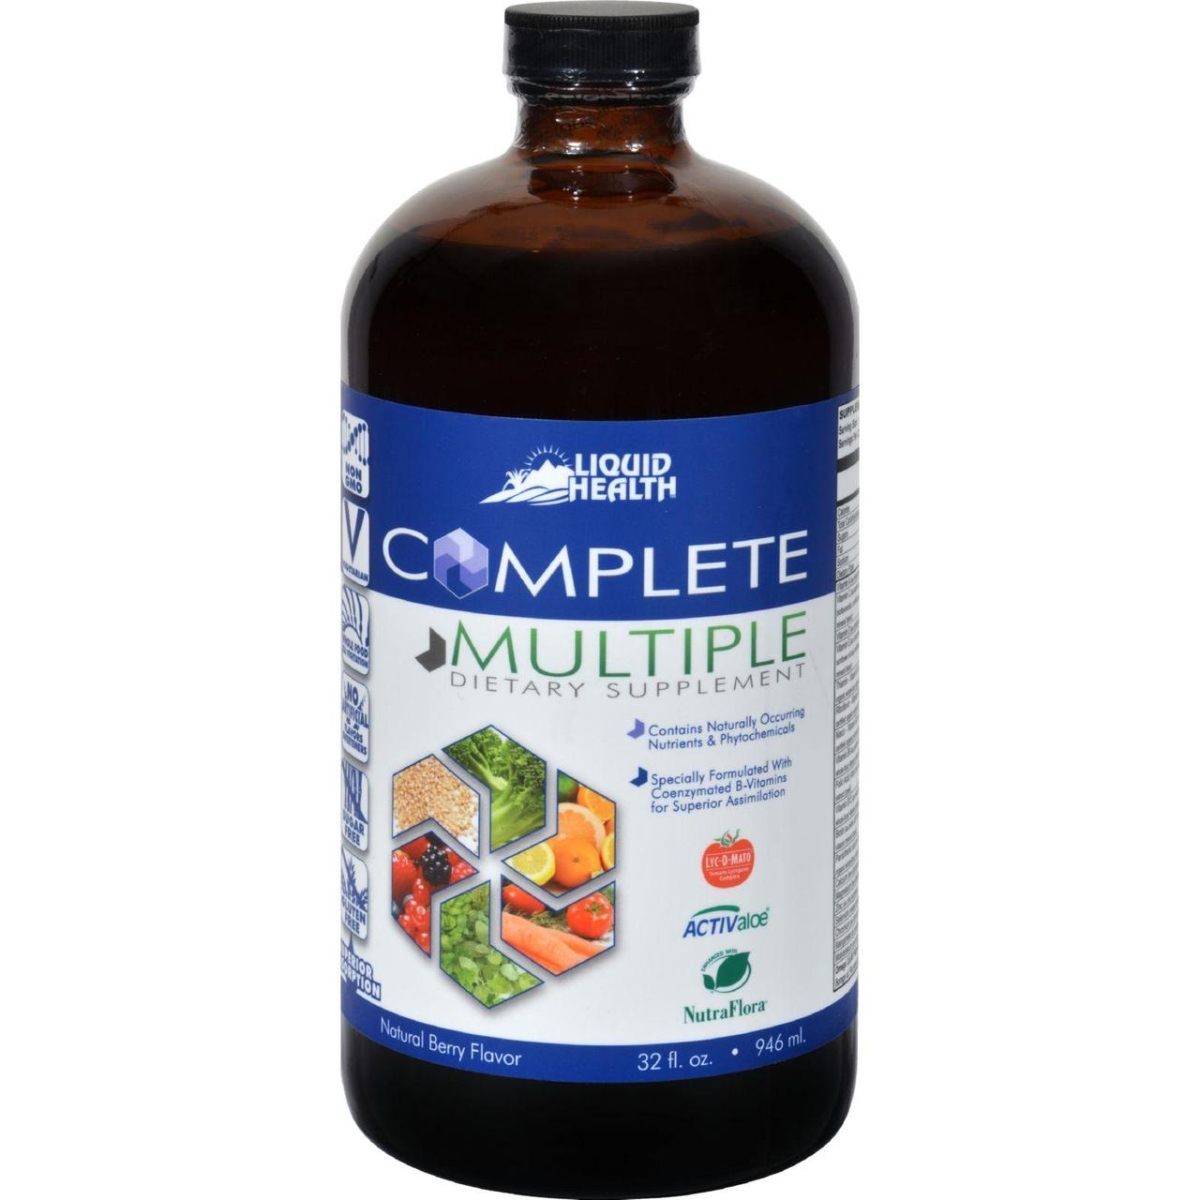 Hg0794594 32 Fl Oz Liquid Health Complete Multiple Original